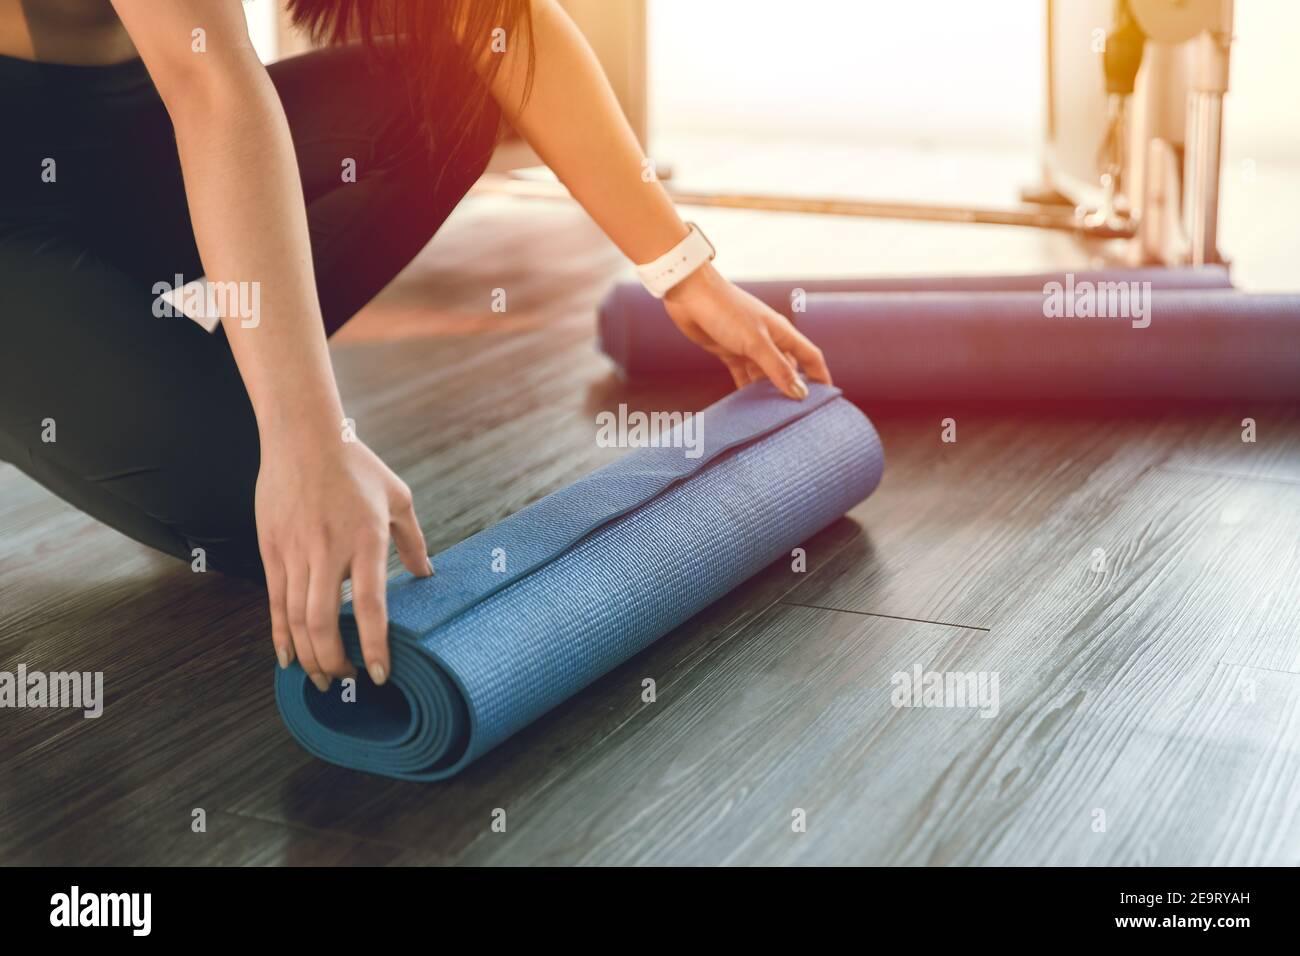 Yogamatte, gesunde Passform Frau Rolling up Übung Gummiblatt für die Startklasse im Sportverein Stockfoto